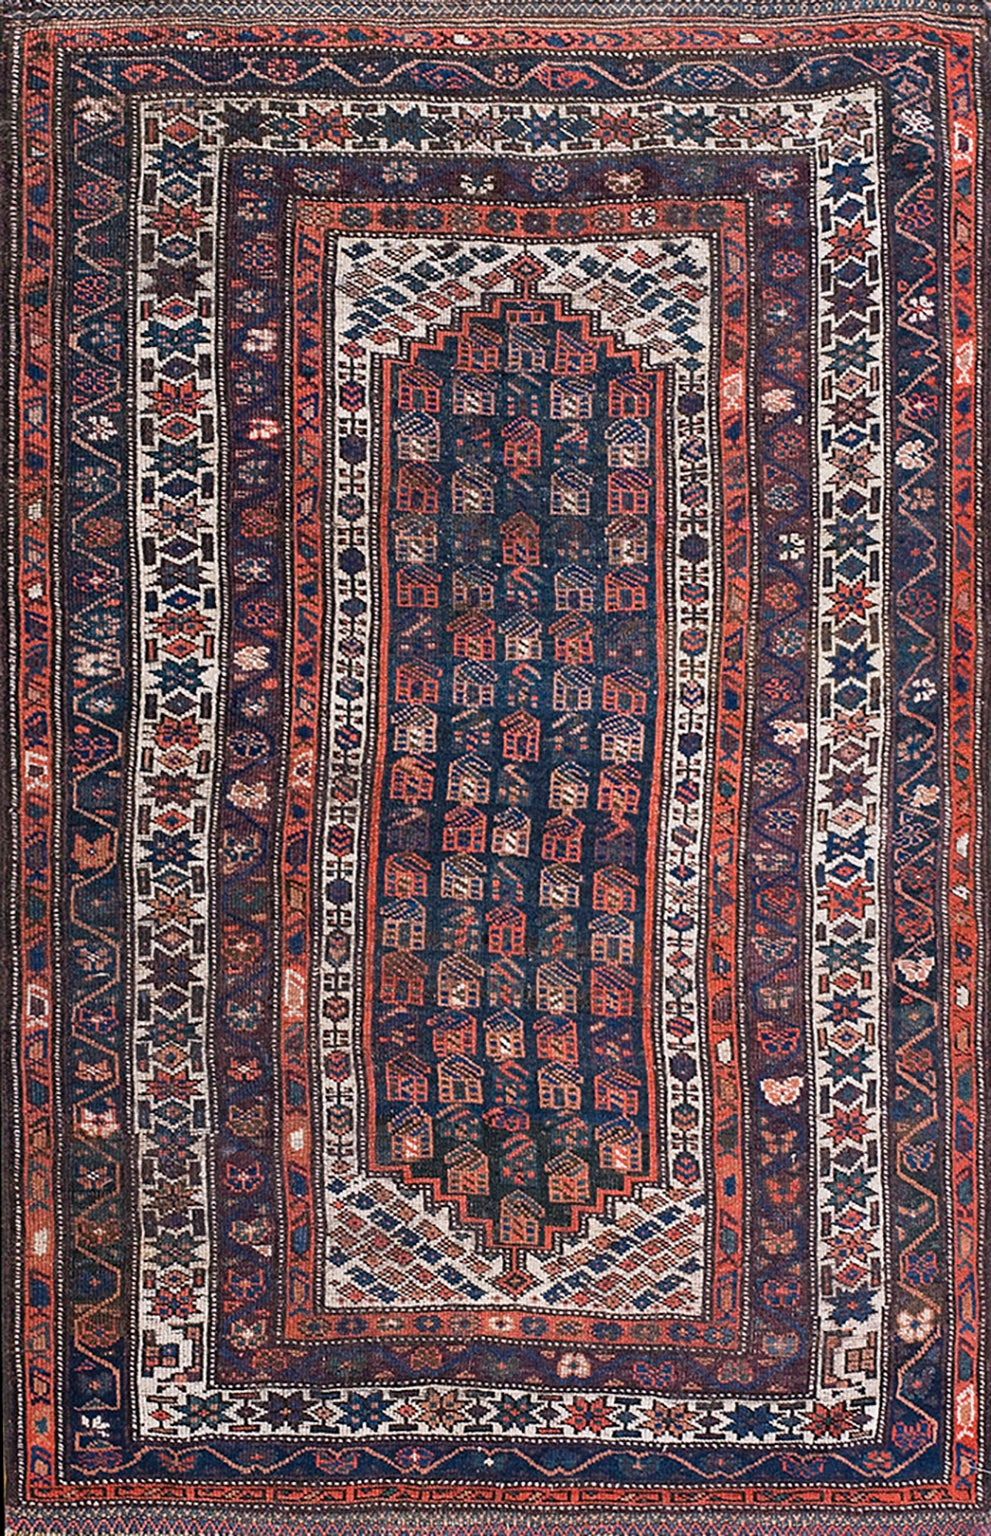 W. Persischer Kurdischer Teppich des frühen 20. Jahrhunderts ( 4'6" x 6'9" - 137 x 206")